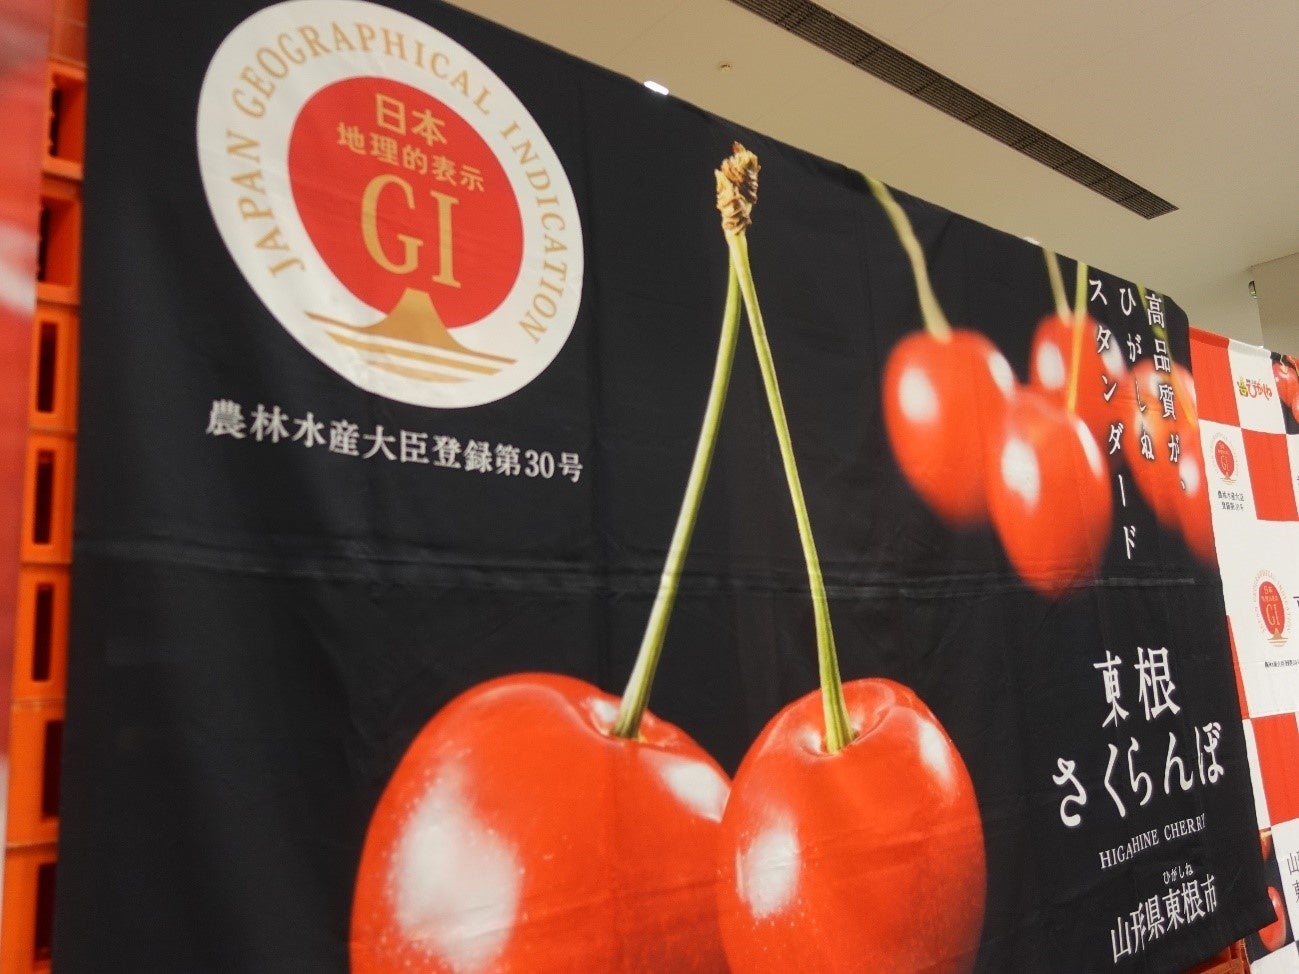 3年ぶりとなるGI「東根さくらんぼ」品評会が豊洲市場で開催。株式会社食文化は「最優秀賞 三席」という評価を得た、植松広樹氏が栽培した佐藤錦をセリ落としました。のサブ画像4